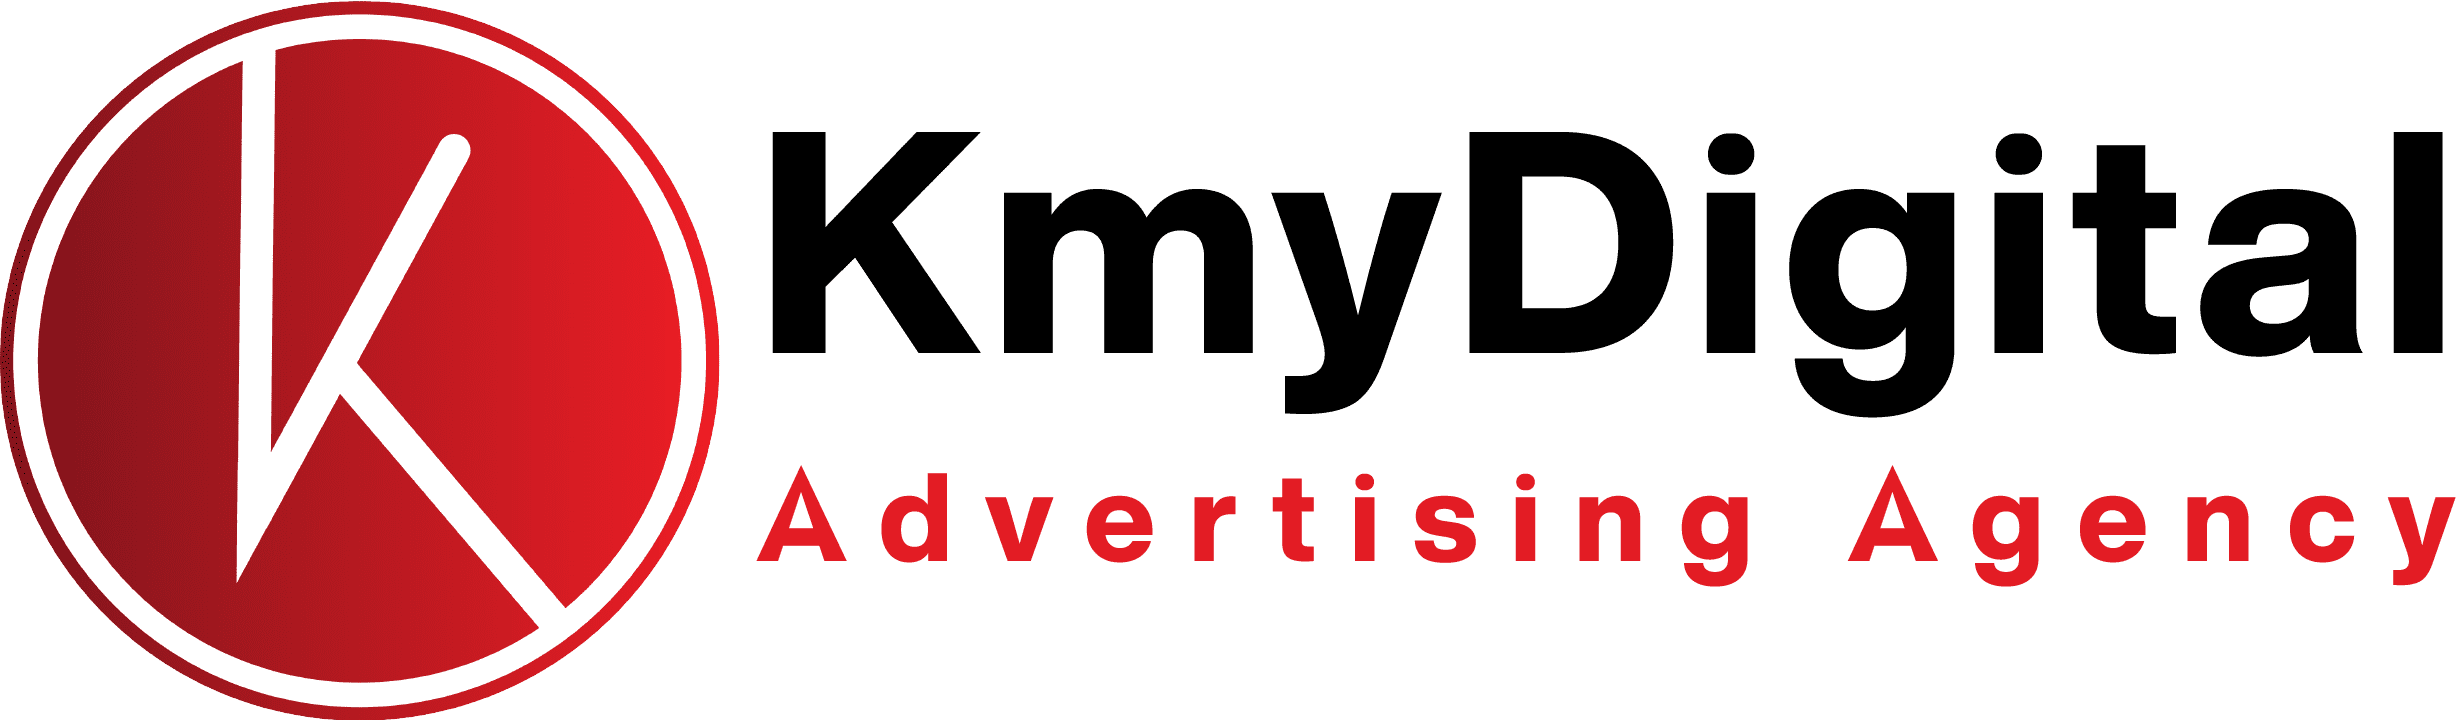 kmydigital logo